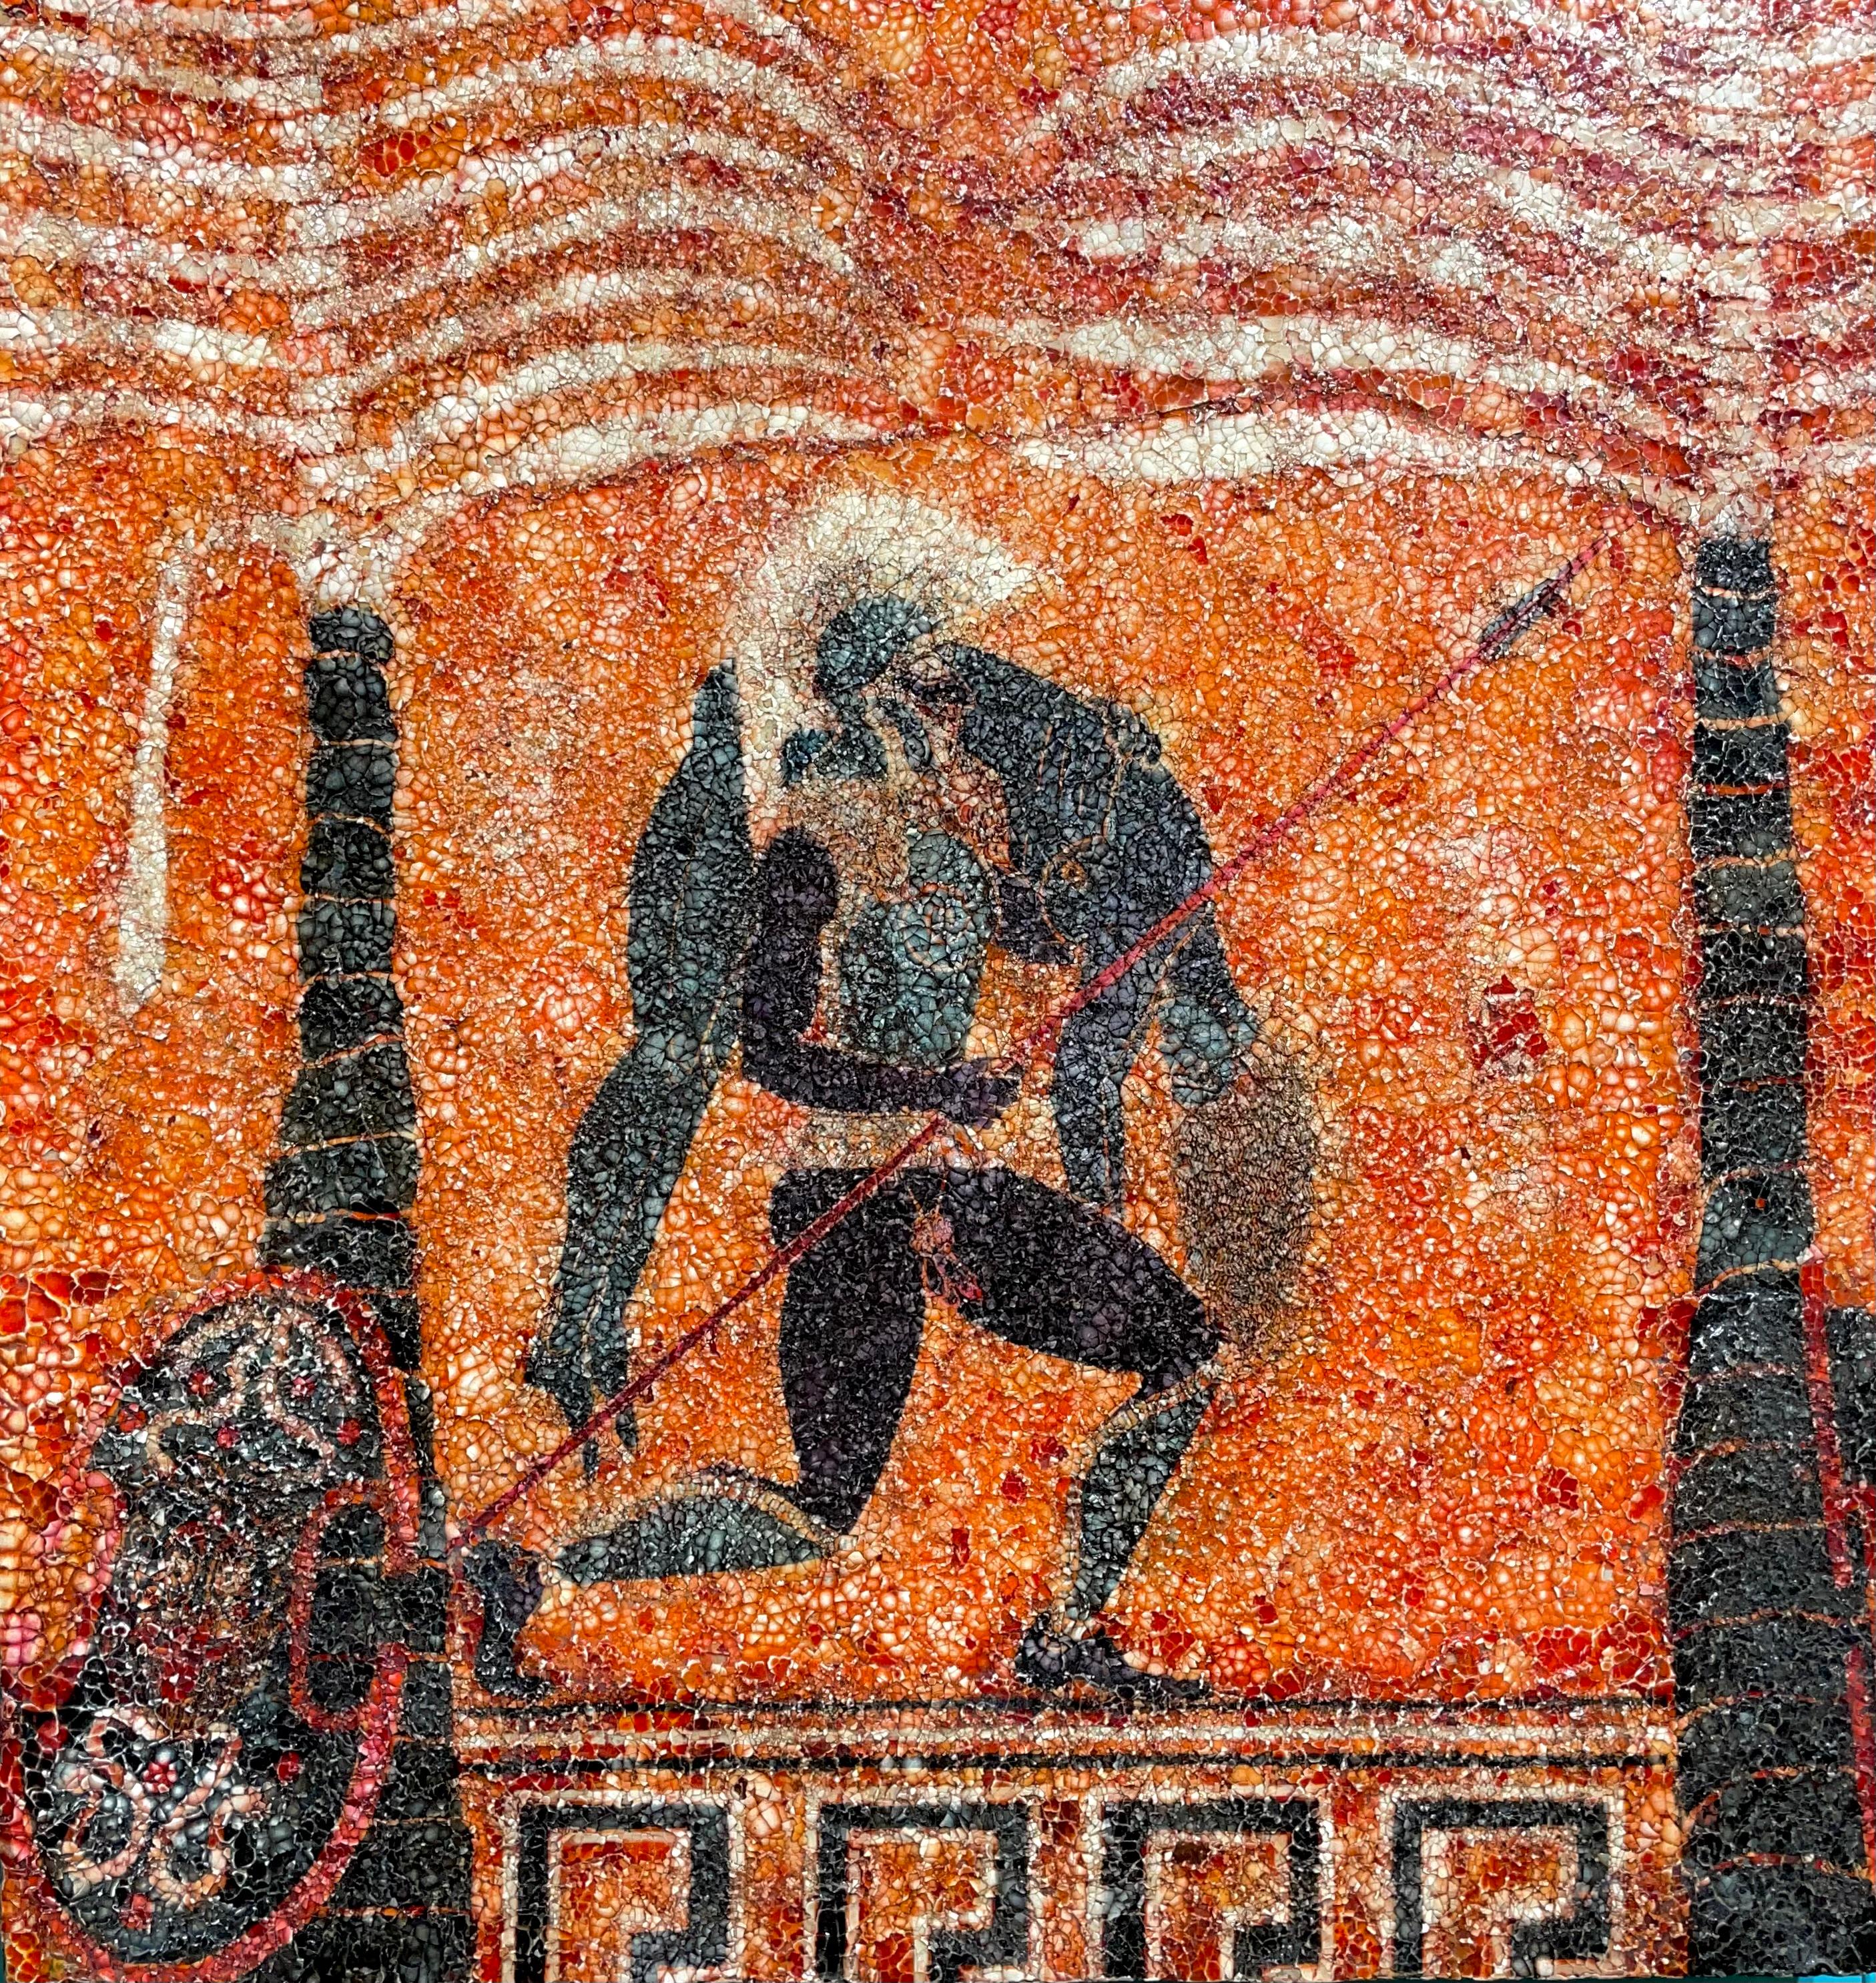 Paul Wirhun Figurative Painting – Eierschalencollage: „Ajax, der den toten Achilles trägt“